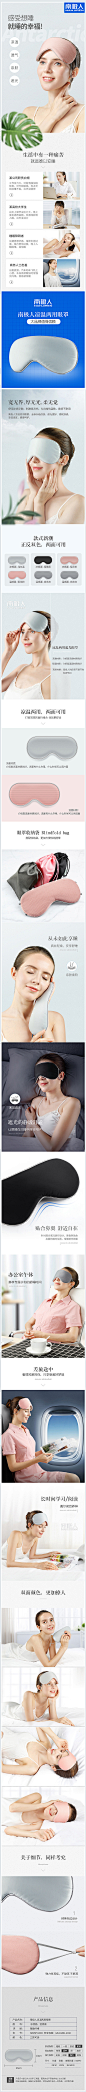 南极人品牌凉温两用遮光眼罩_1356973495_首页/专题图片-致设计